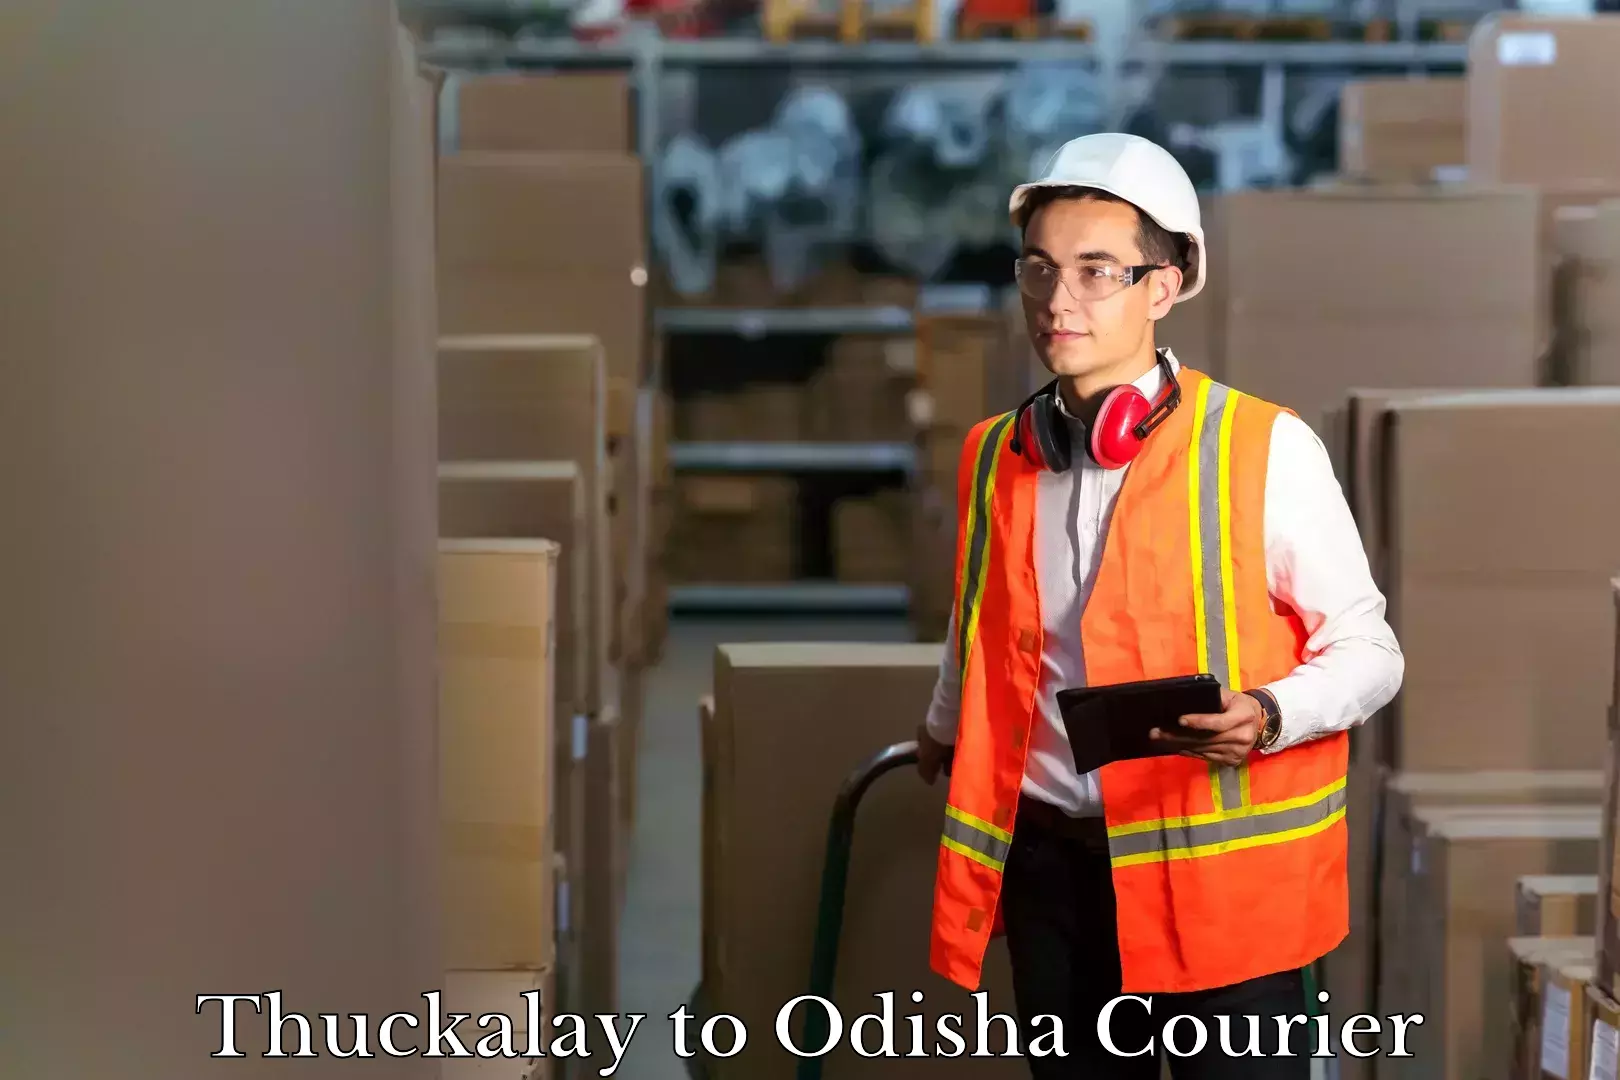 Reliable luggage courier Thuckalay to Odisha